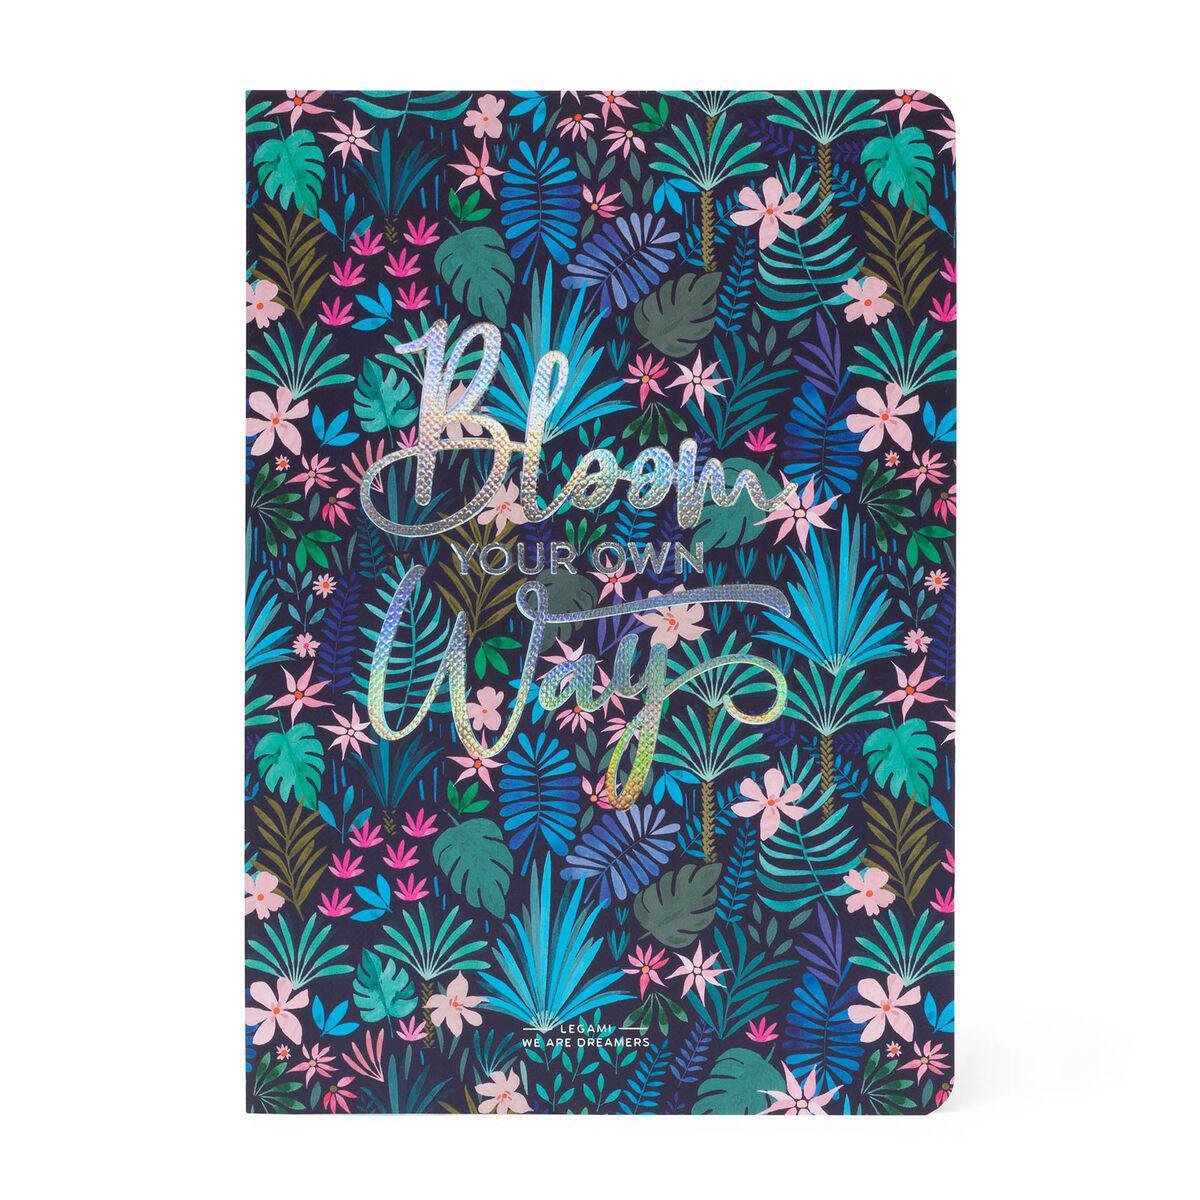 Legami Notitieboek A5 - Bloom Your Own Way Gelinieerd